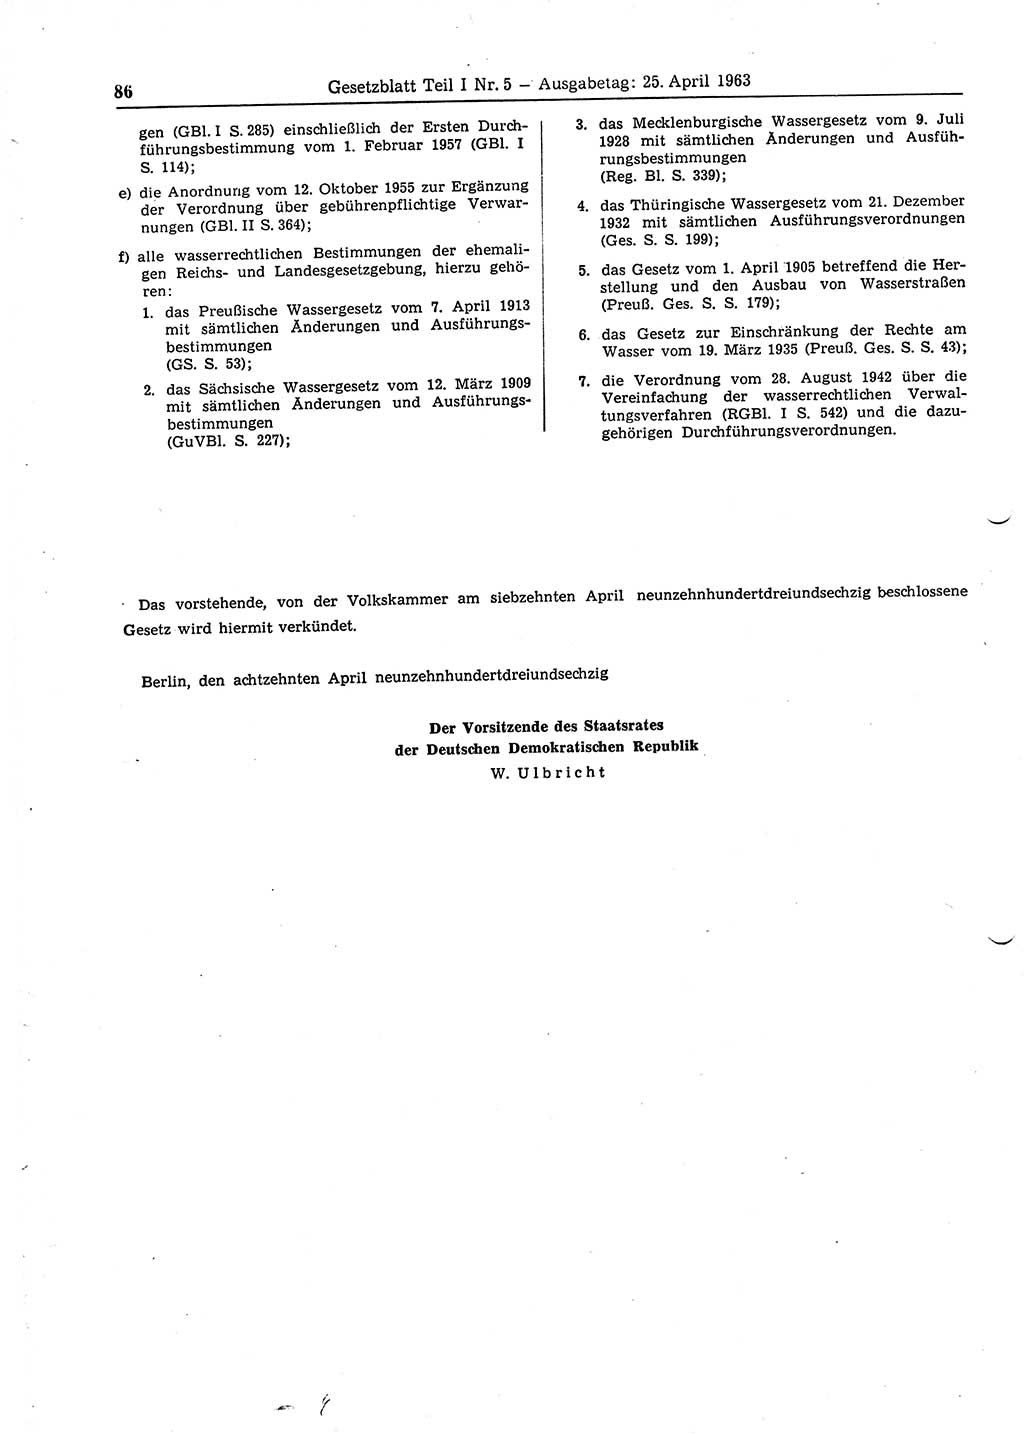 Gesetzblatt (GBl.) der Deutschen Demokratischen Republik (DDR) Teil Ⅰ 1963, Seite 86 (GBl. DDR Ⅰ 1963, S. 86)